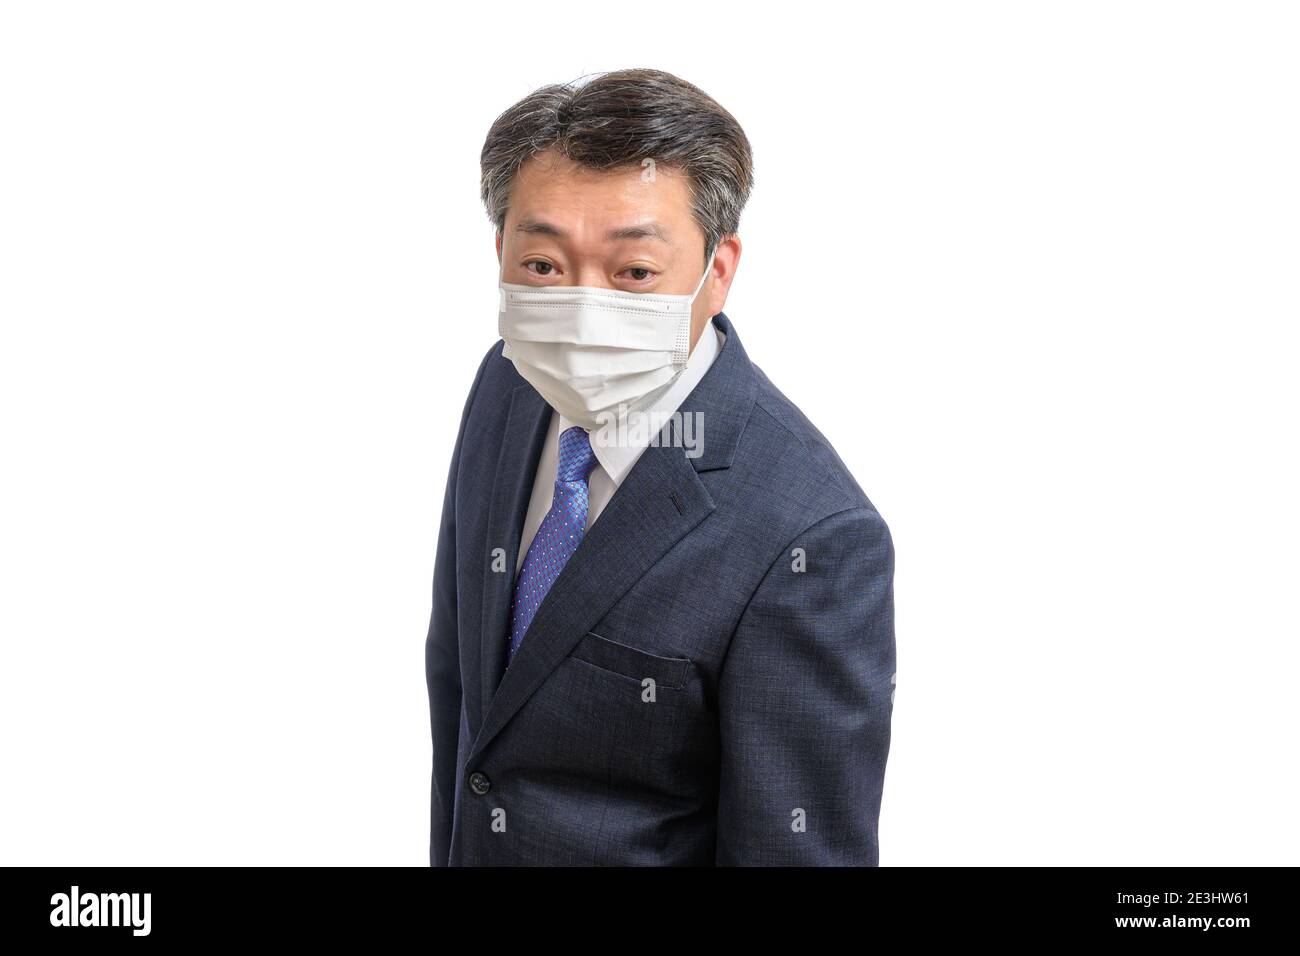 Porträt eines asiatischen Geschäftsmannes mittleren Alters mit weißer Gesichtsmaske. Weißer Hintergrund. Covid19, Gesundheit und Geschäftskonzepte. Stockfoto